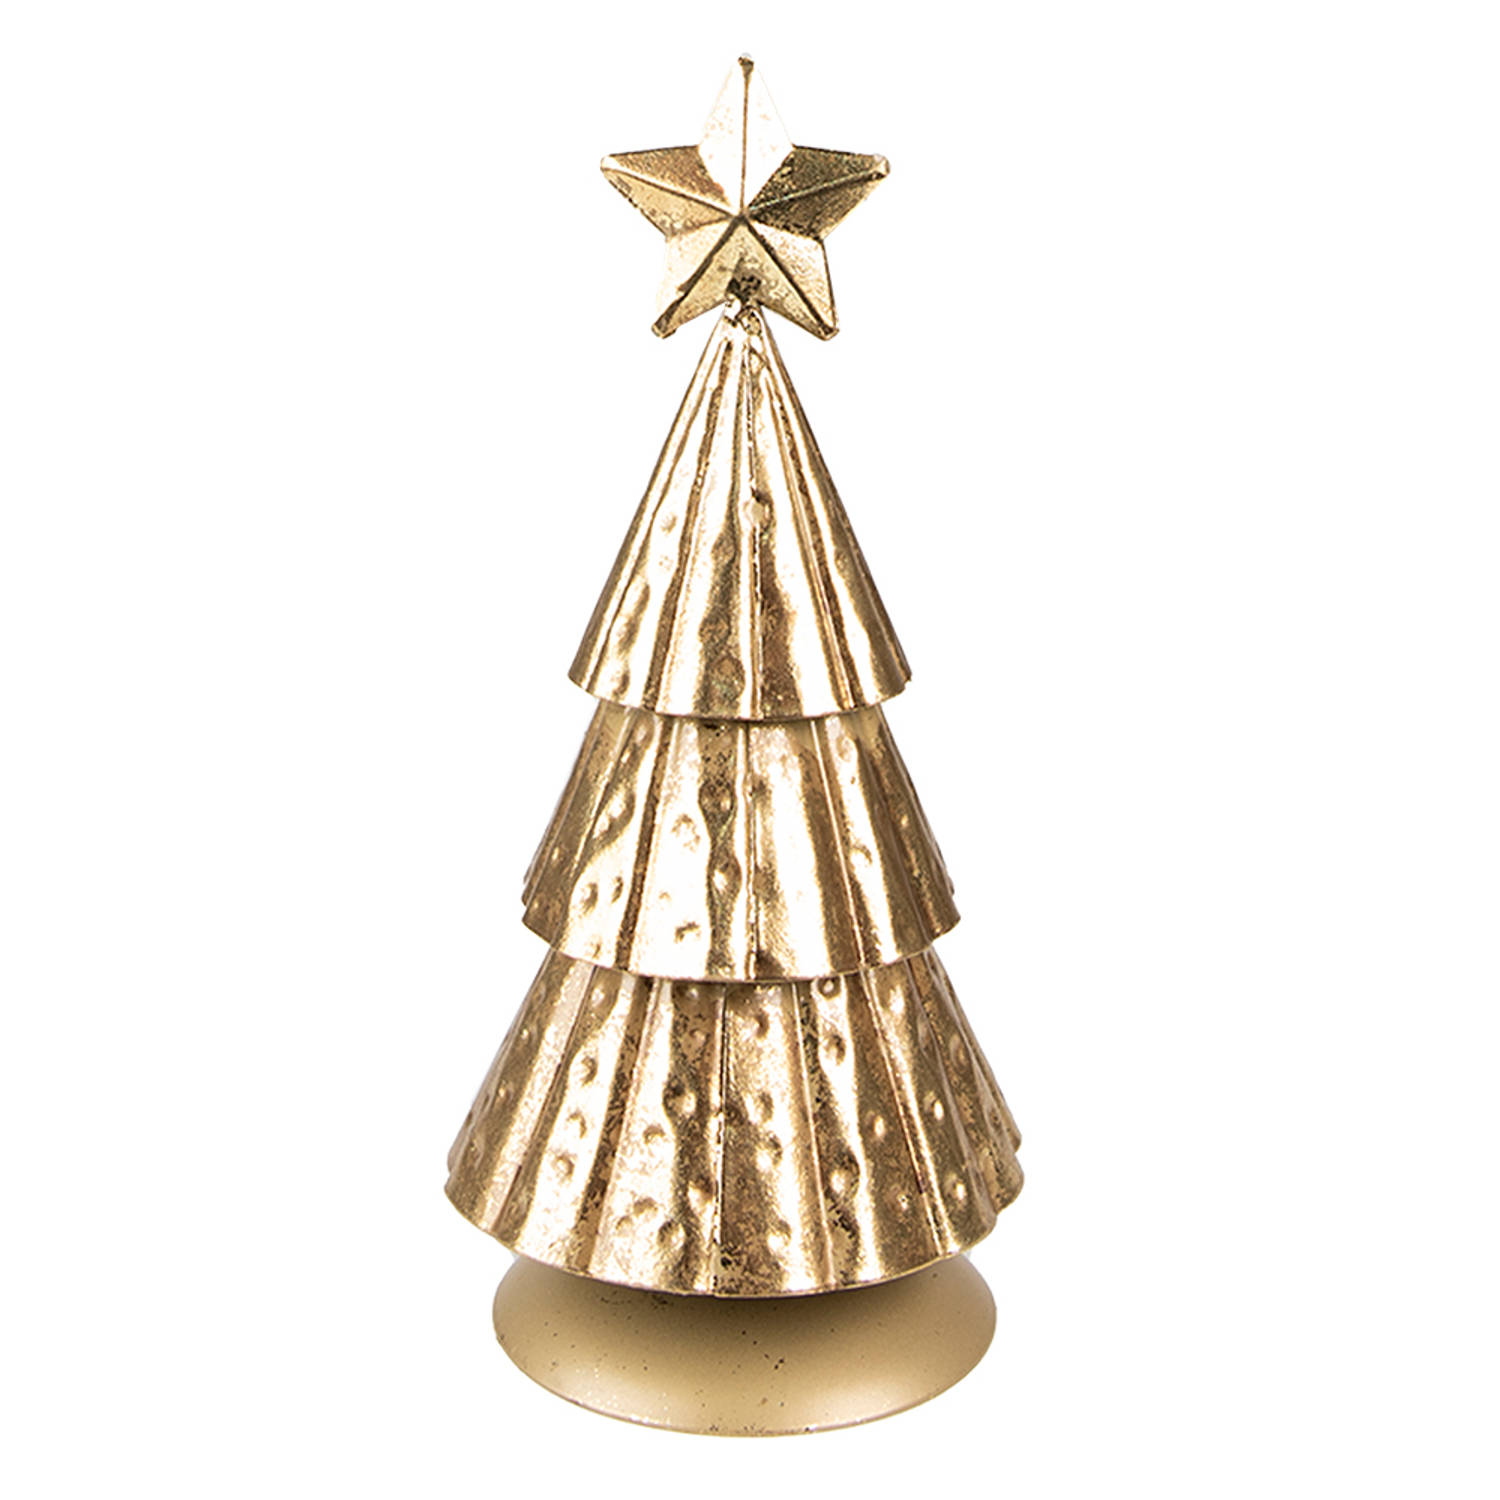 HAES DECO - Decoratieve Kerstboom - Formaat Ø 8x20 cm - Kleur Goudkleurig - Materiaal Metaal - Kerstversiering, Kerstdecoratie